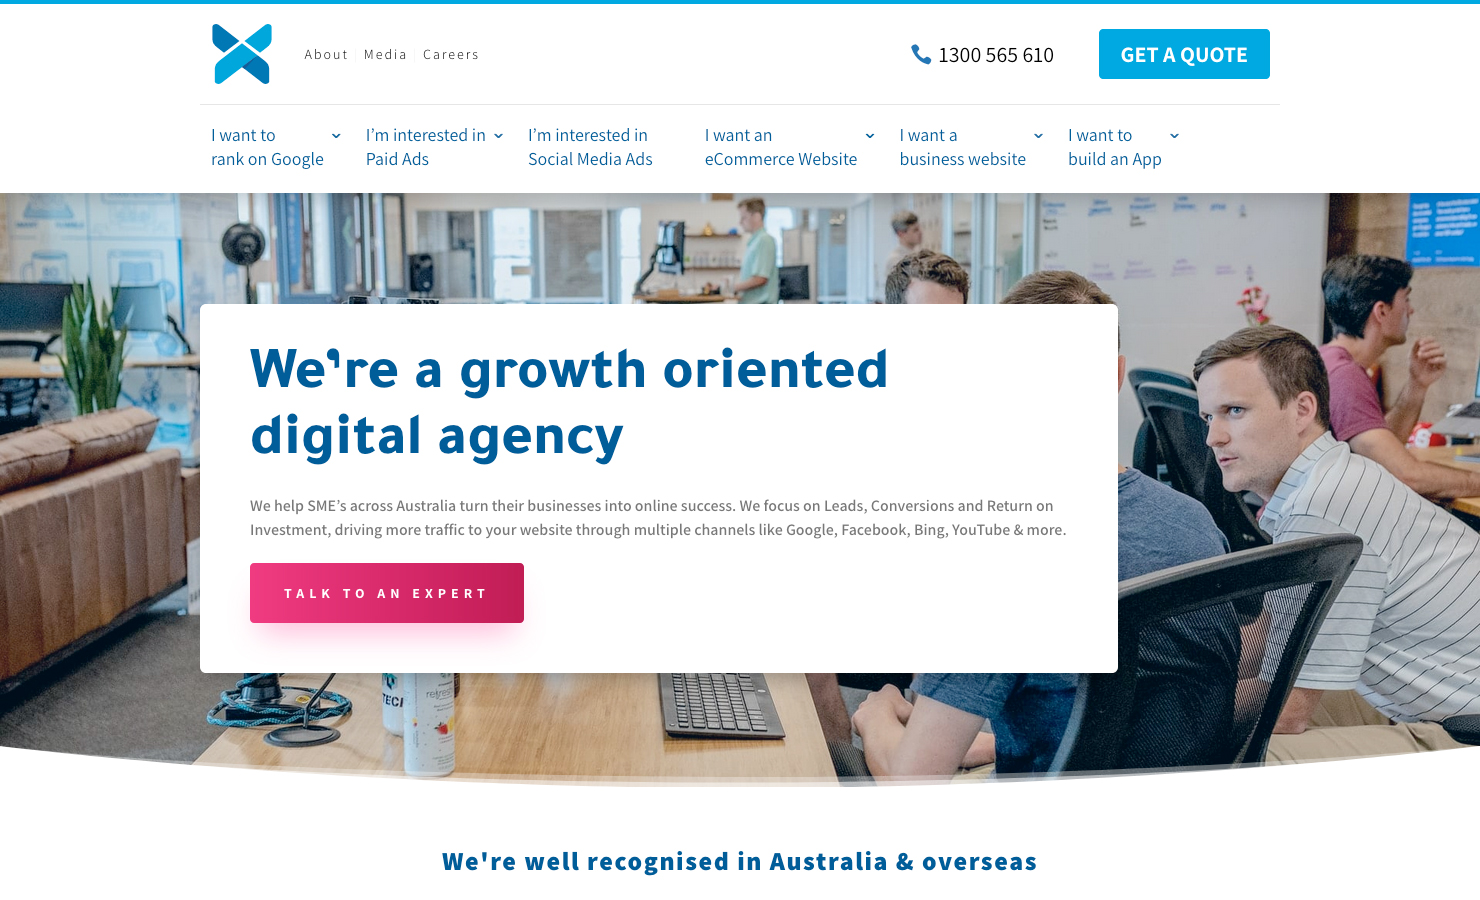 Xugar - Digital Agency Melbourne